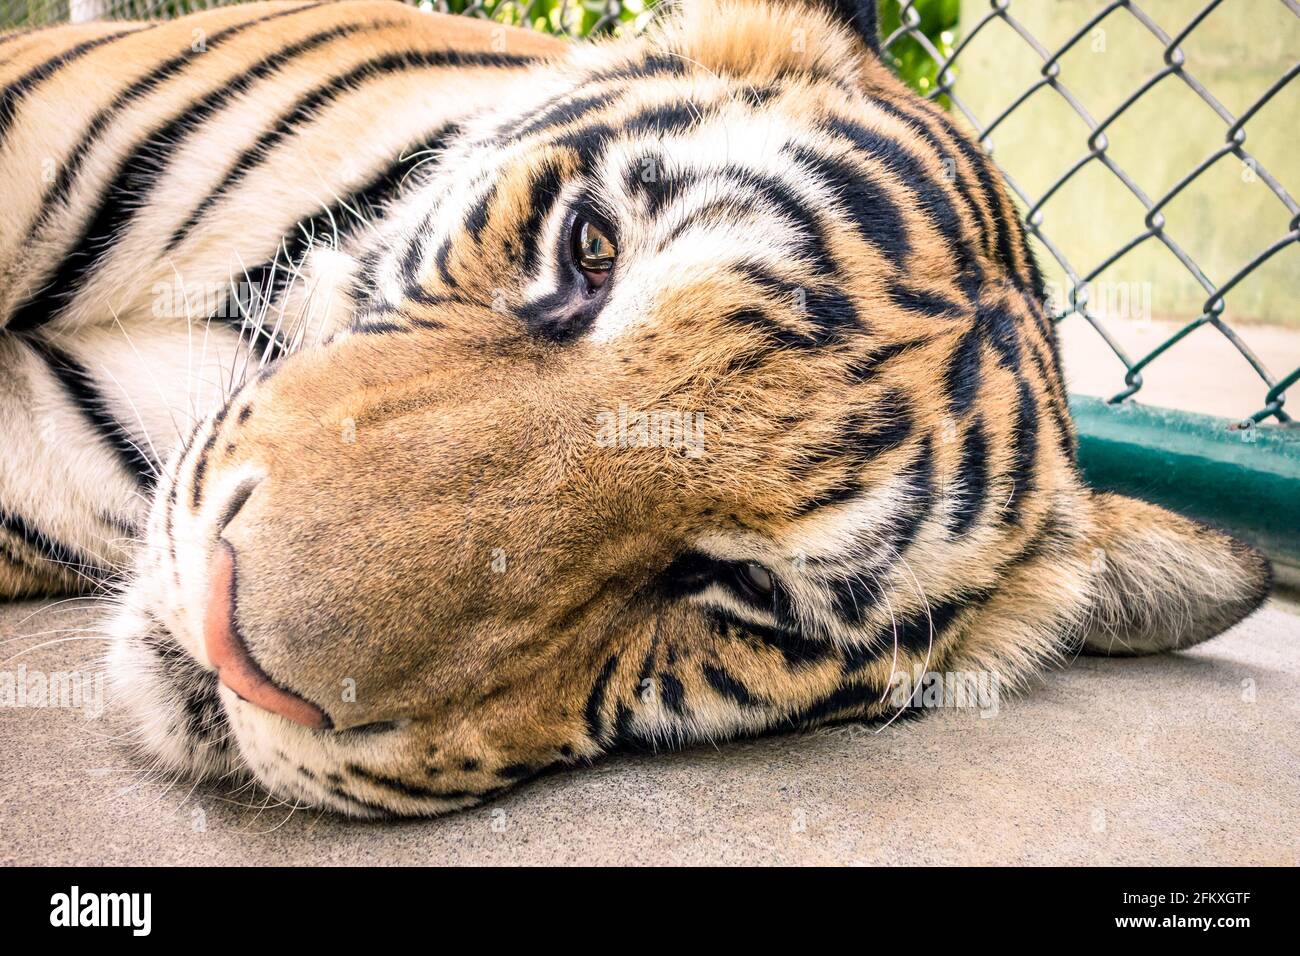 Trauriger Tiger in einem Zoo-Käfig - Tiermissbrauch Stockfoto